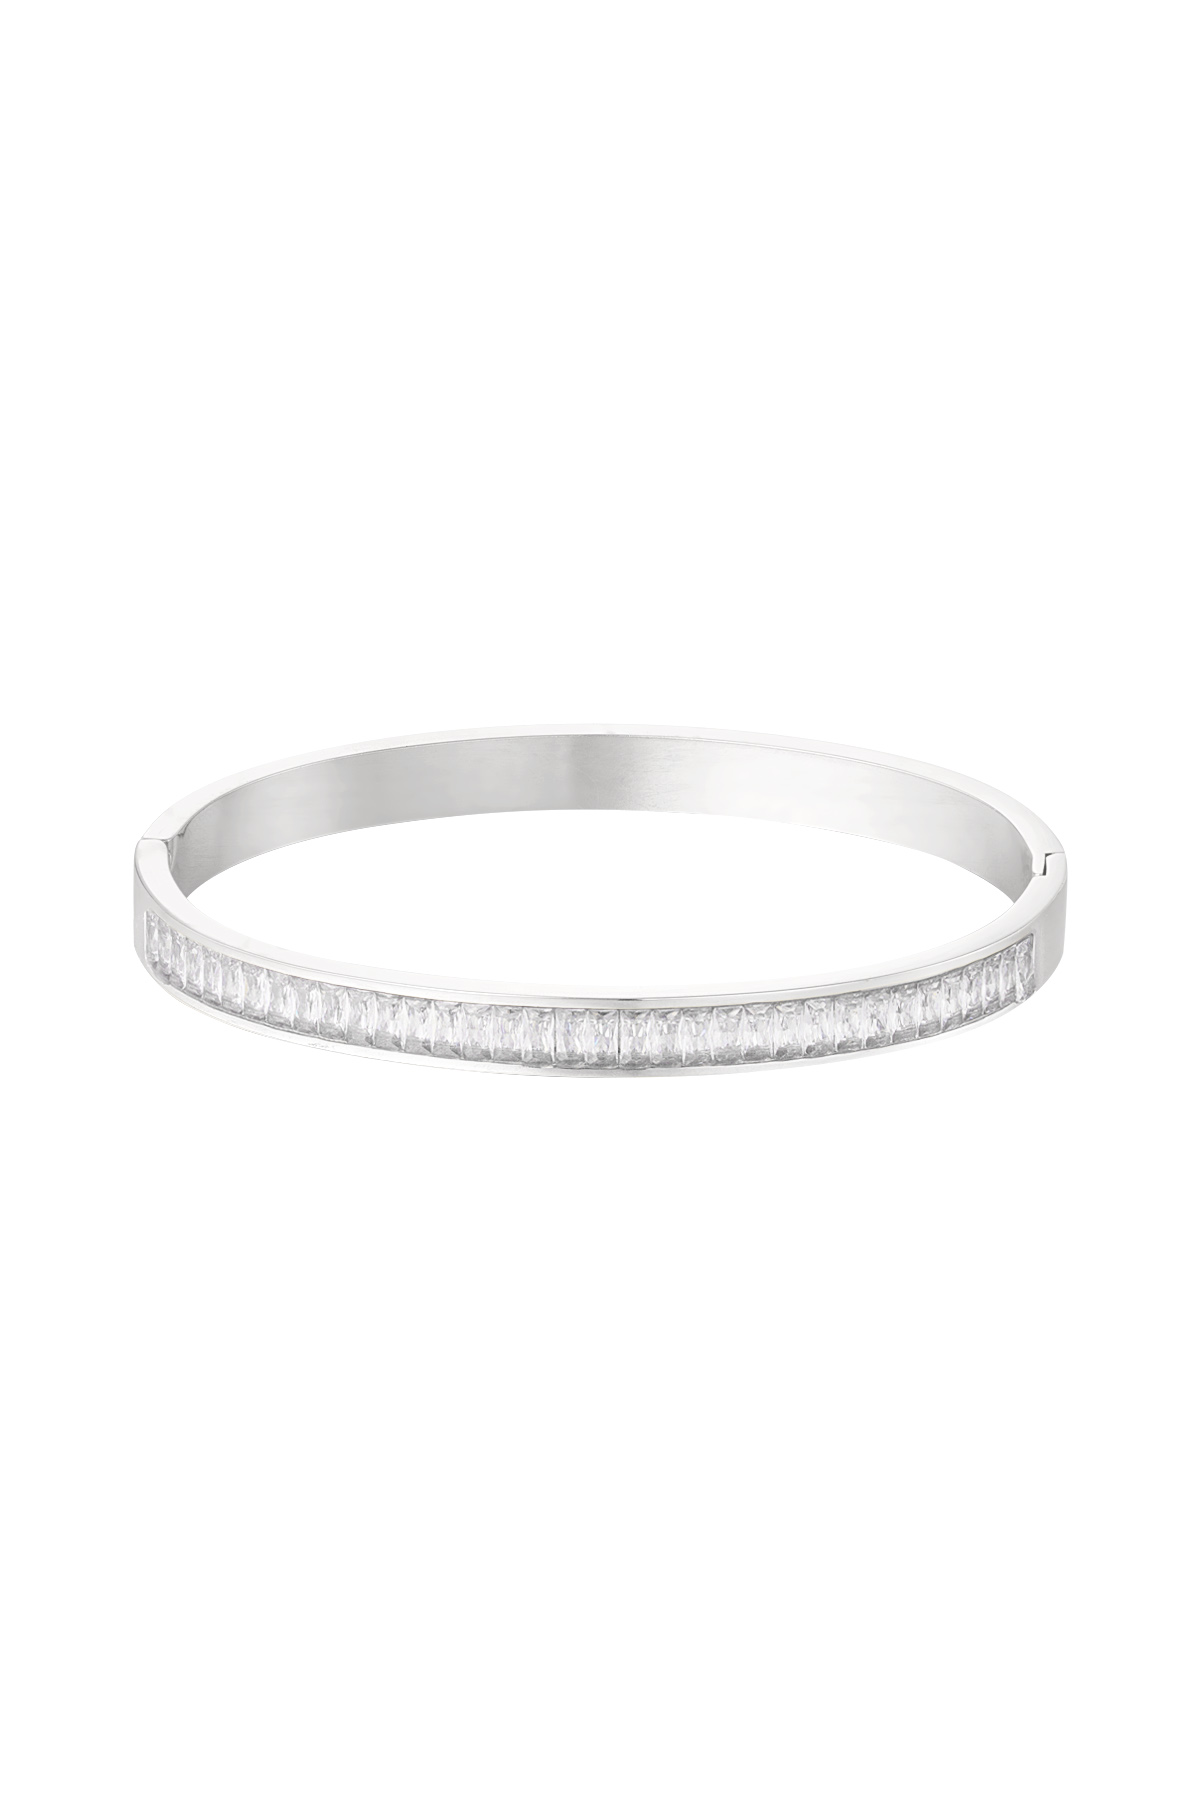 Slave bracelet stones - silver/white